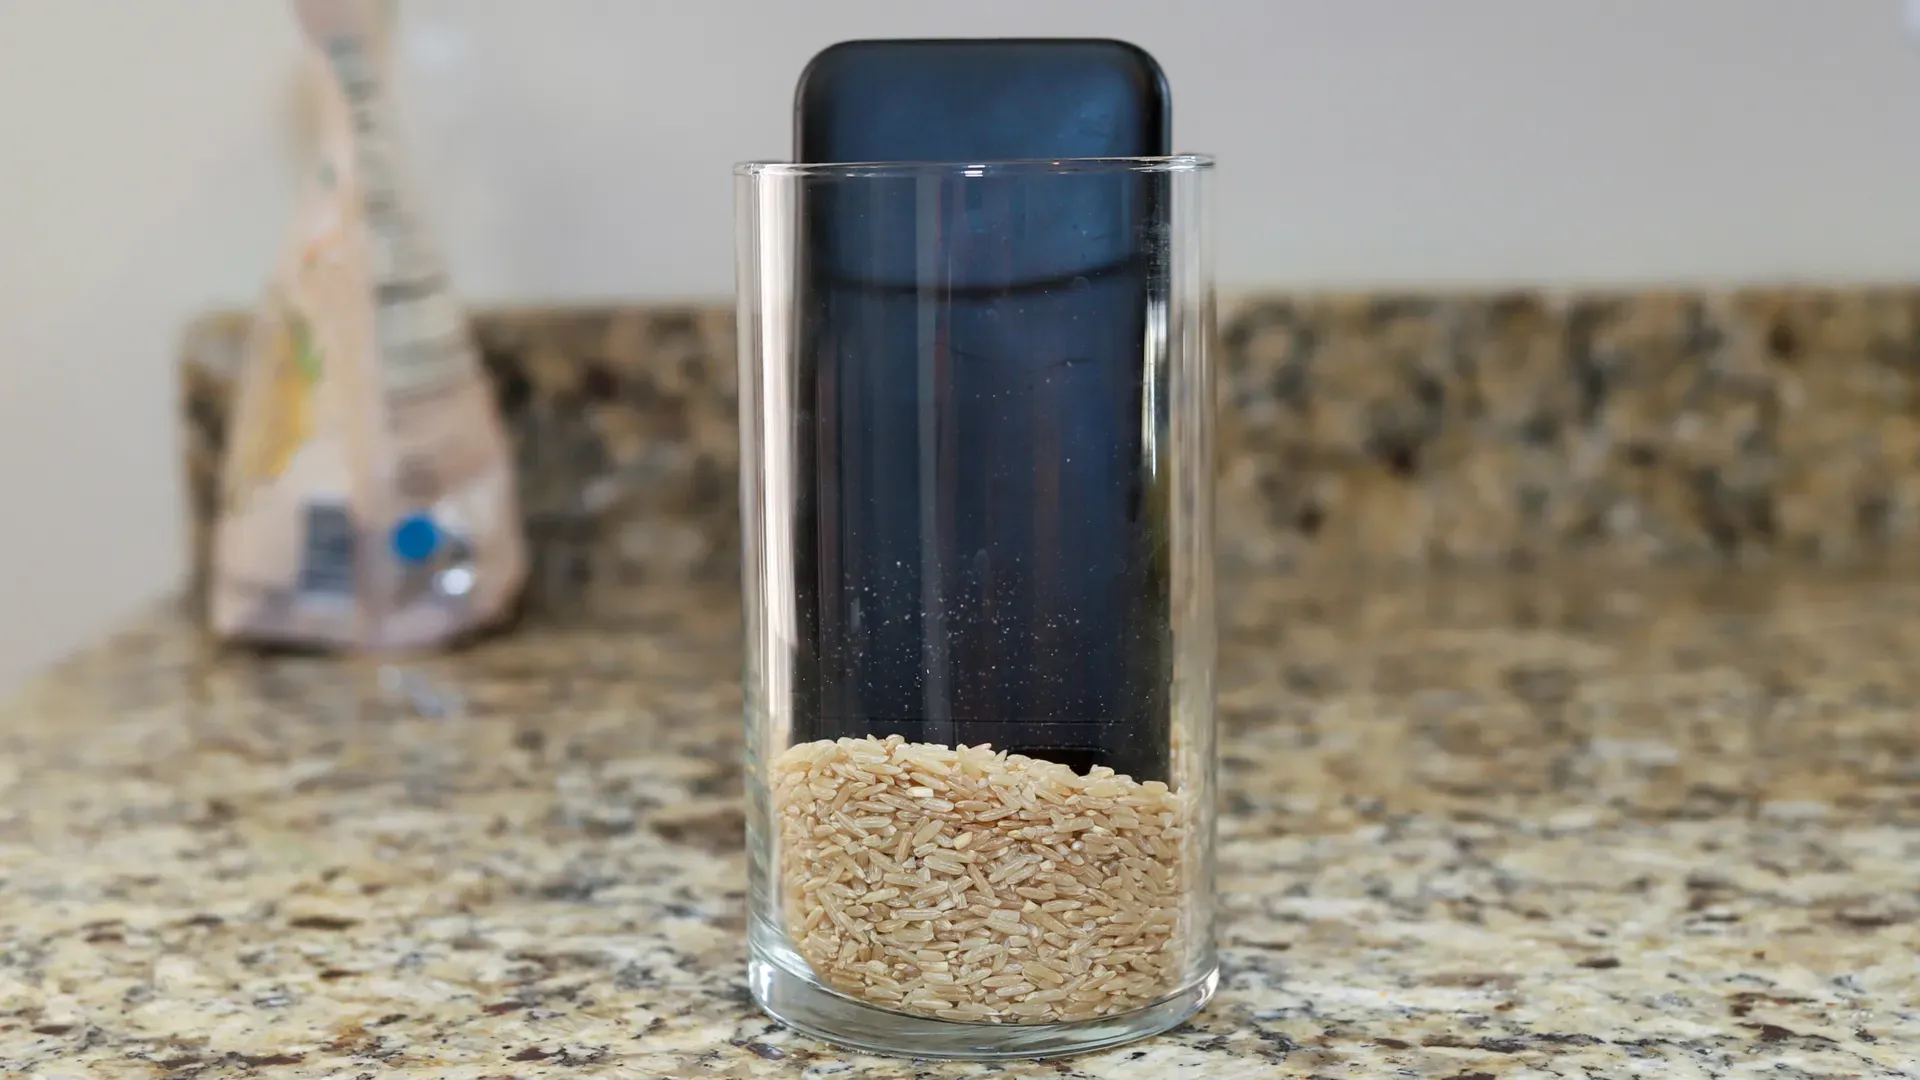 Celular desligado dentro de um copo com arroz